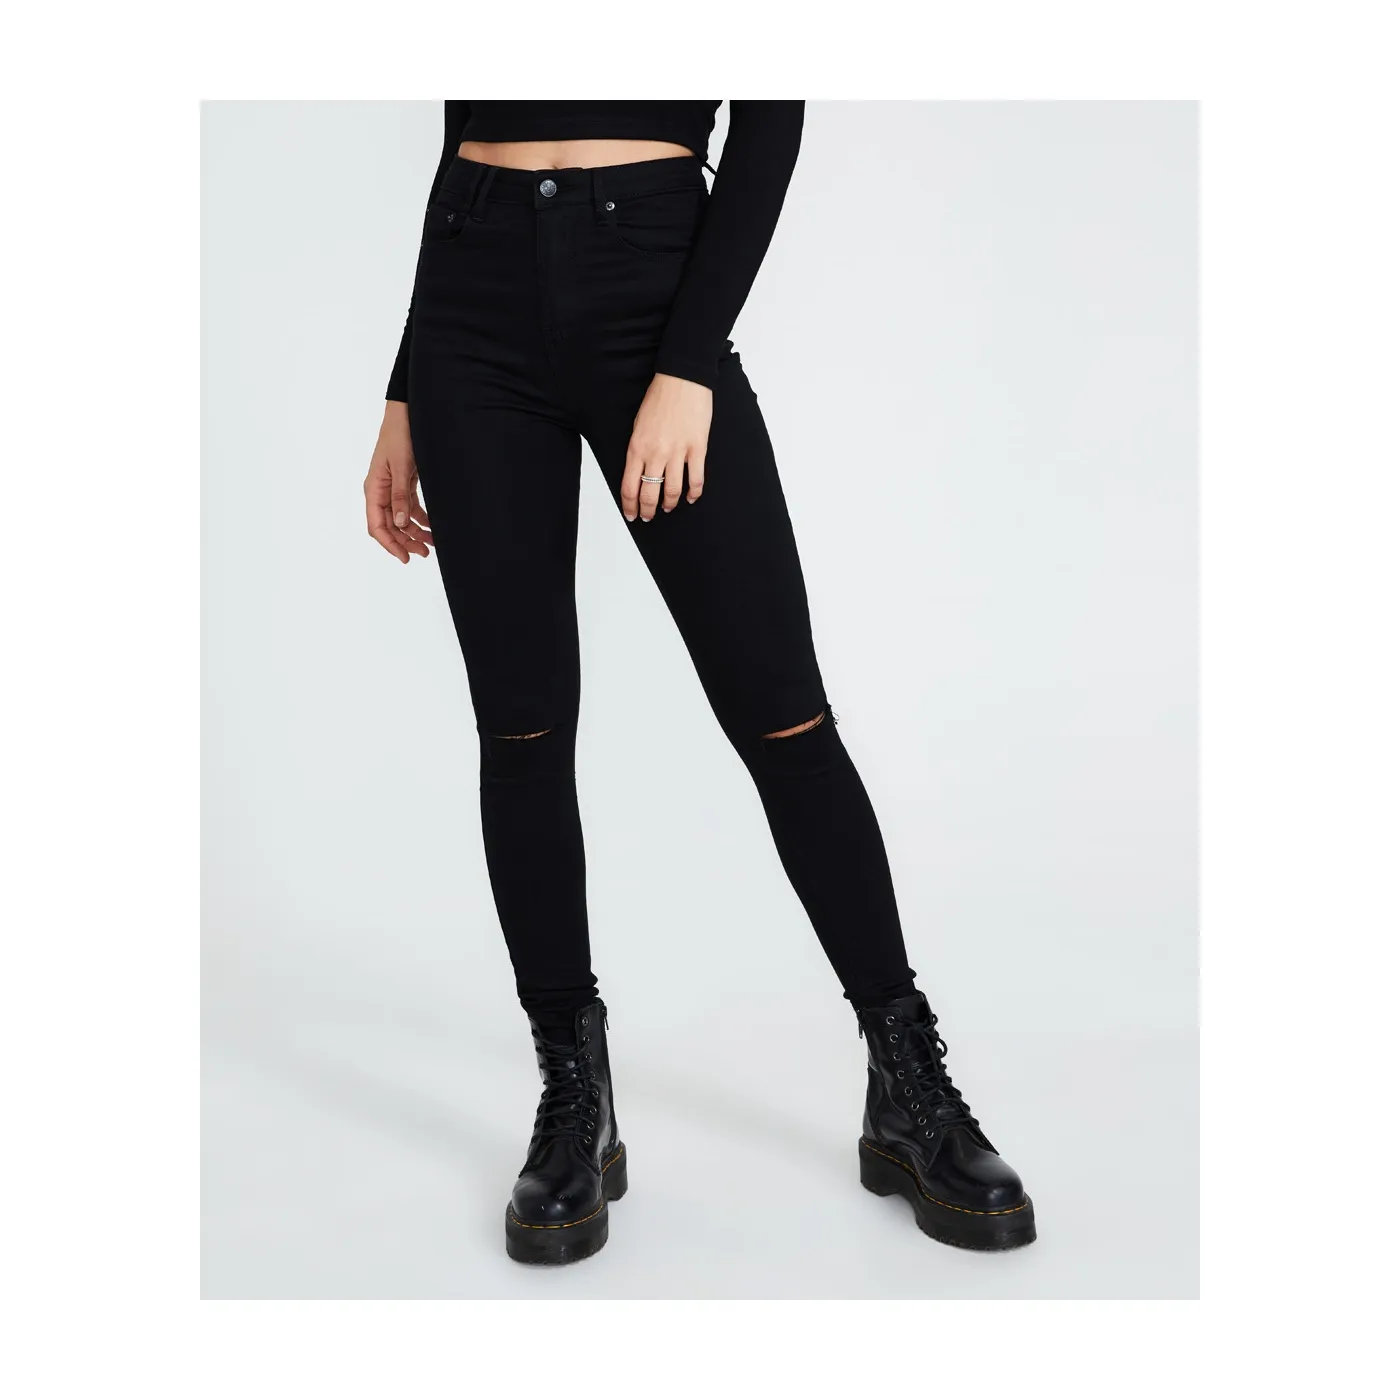 Kadınlar slim fit skinny jeans siyah renk pantolon tasarım artı boyutu ve cepler kot kızlar için